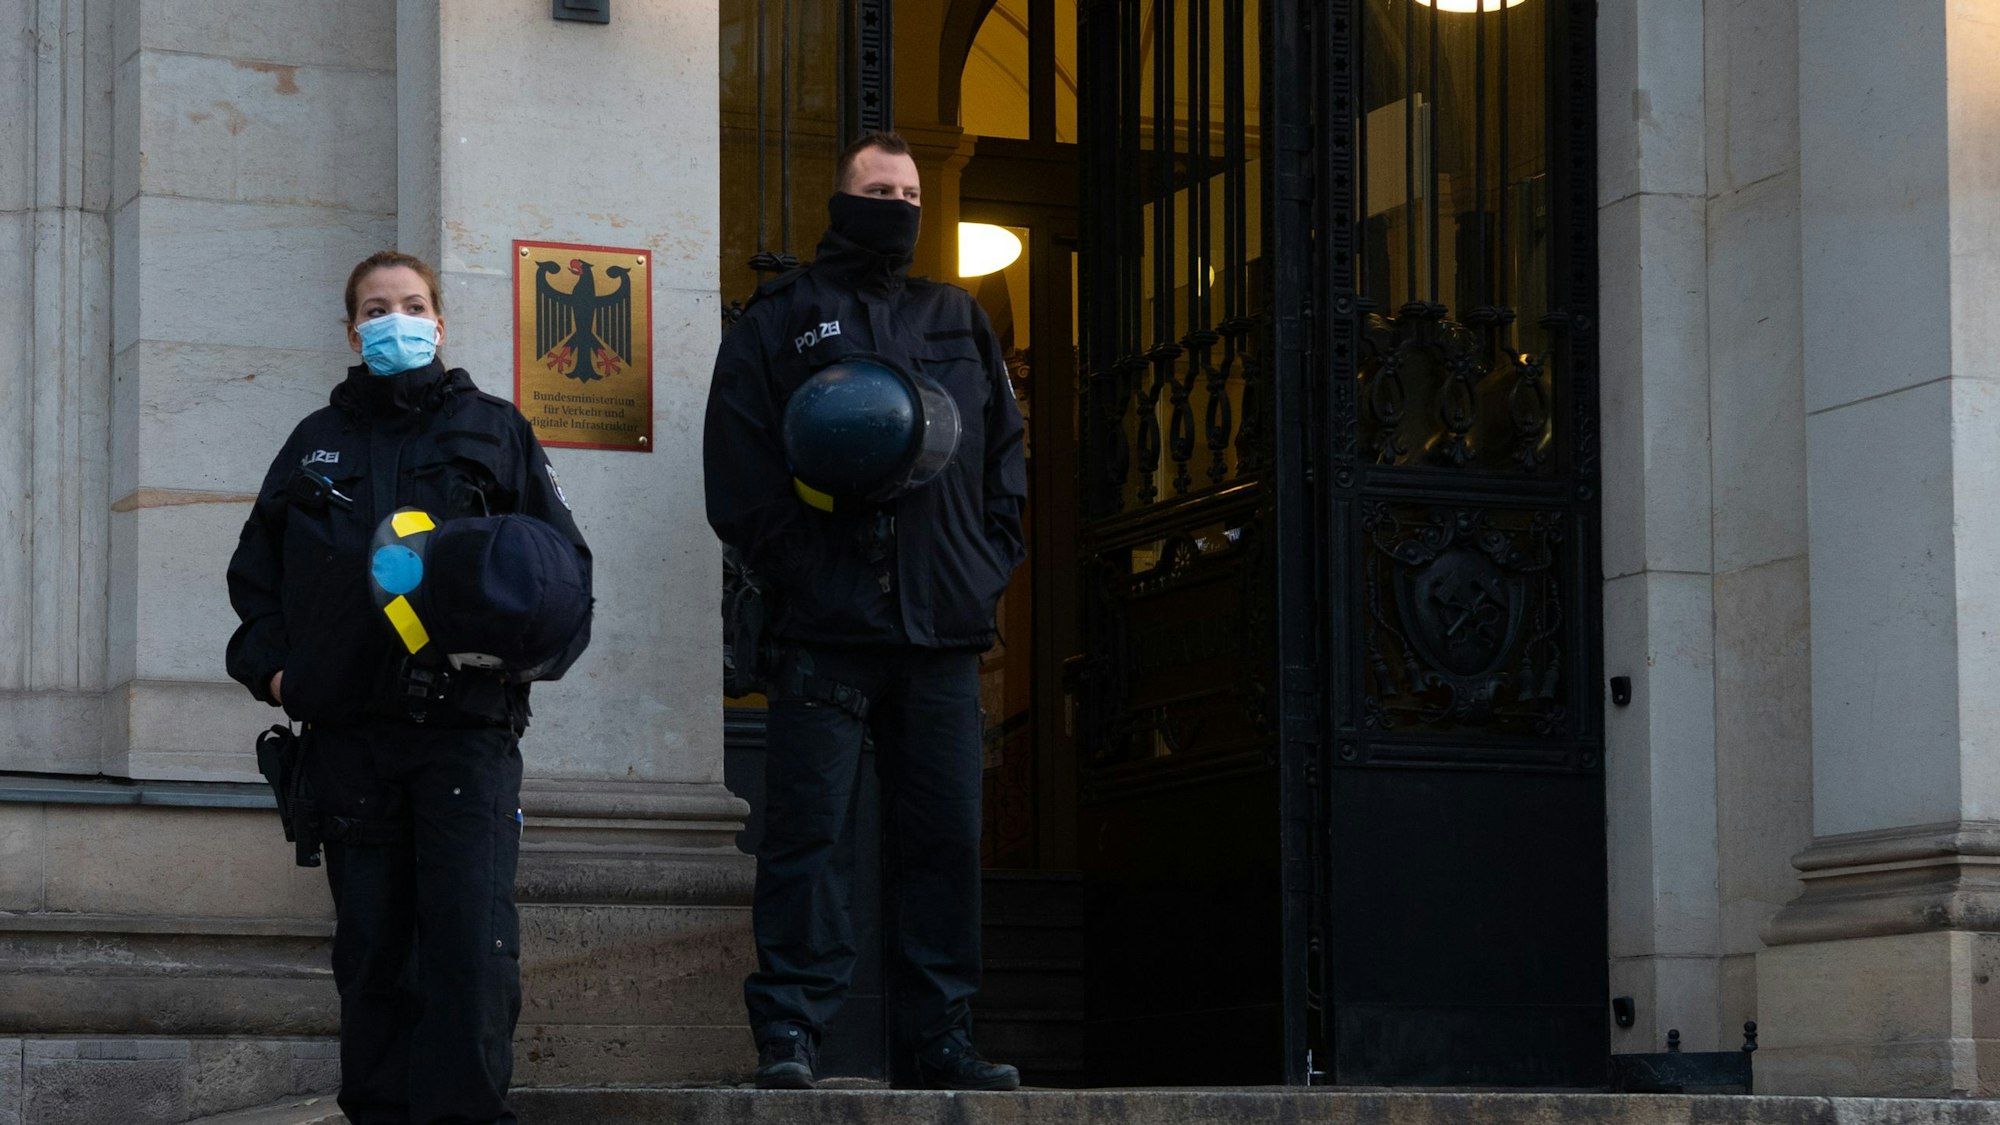 Polizisten sichern den Haupteingang zum Bundesverkehrsministerium. Sie stehen auf der Treppe vor dem Gebäude, dessen Tür geöffnet ist. (Archivbild)